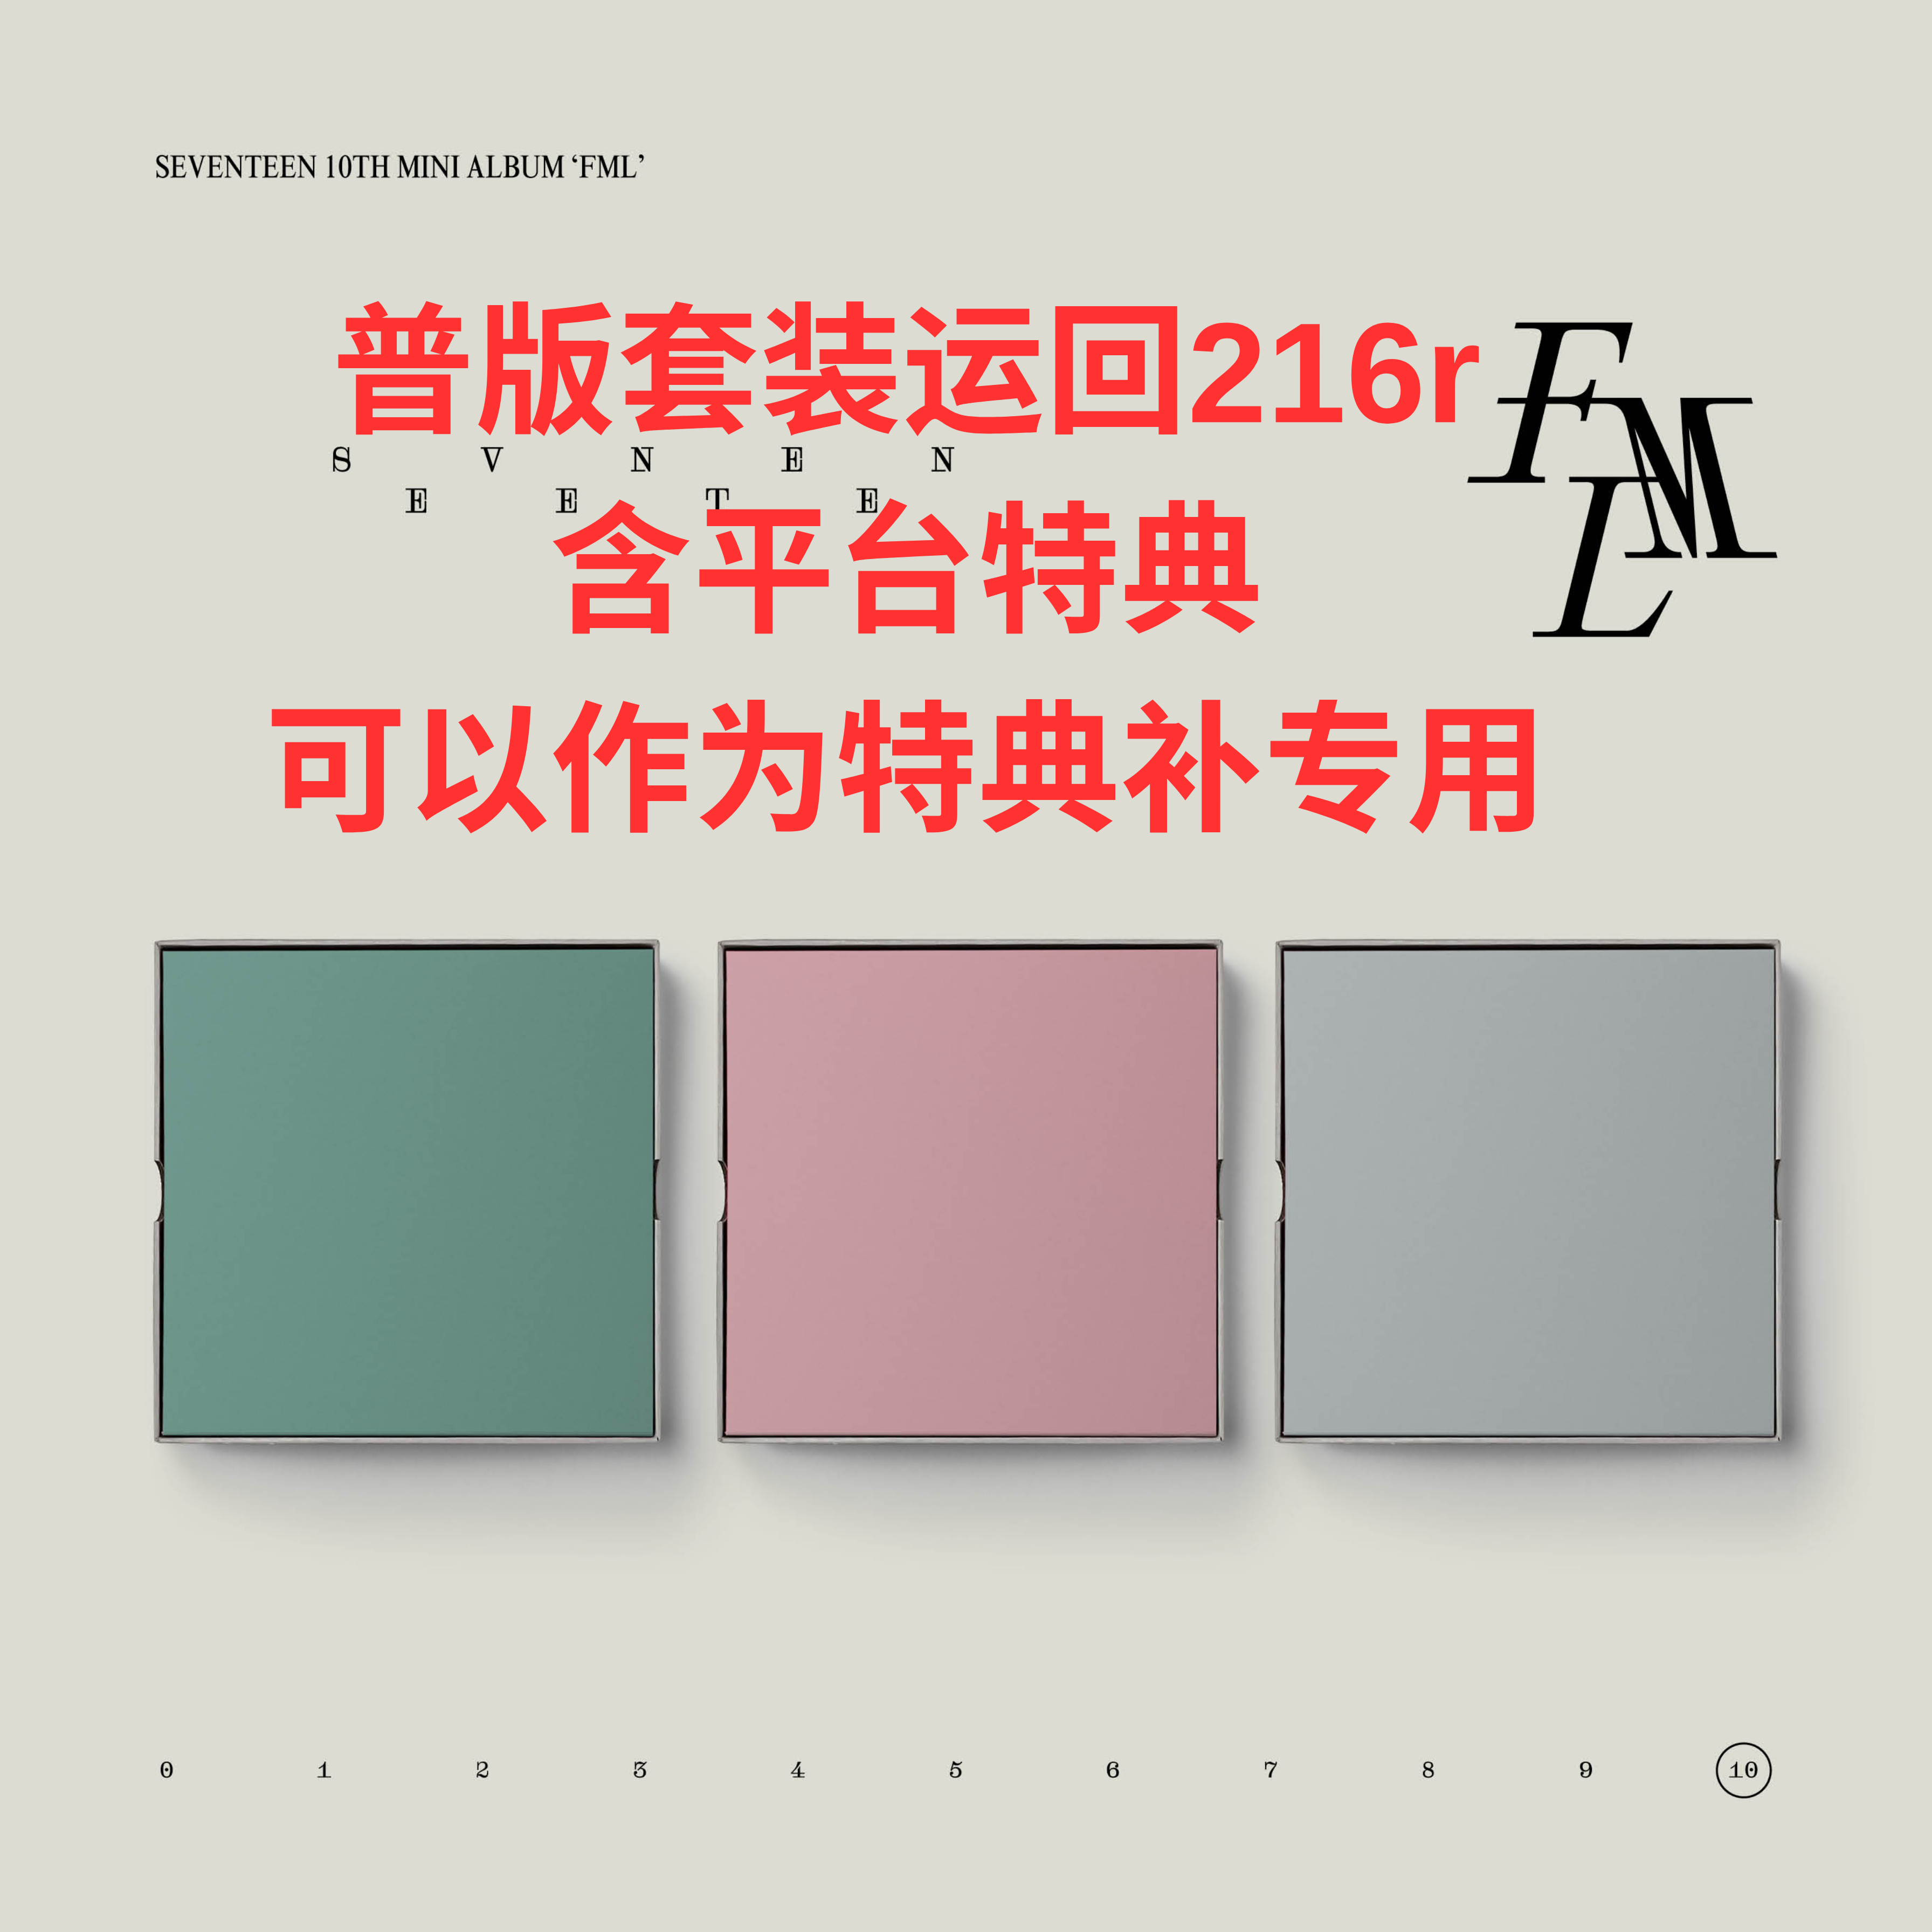 [全款 裸专] [Ktown4u Special Gift] [3CD SET] SEVENTEEN - 10th Mini Album [FML]_徐明浩_The8Day记事馆